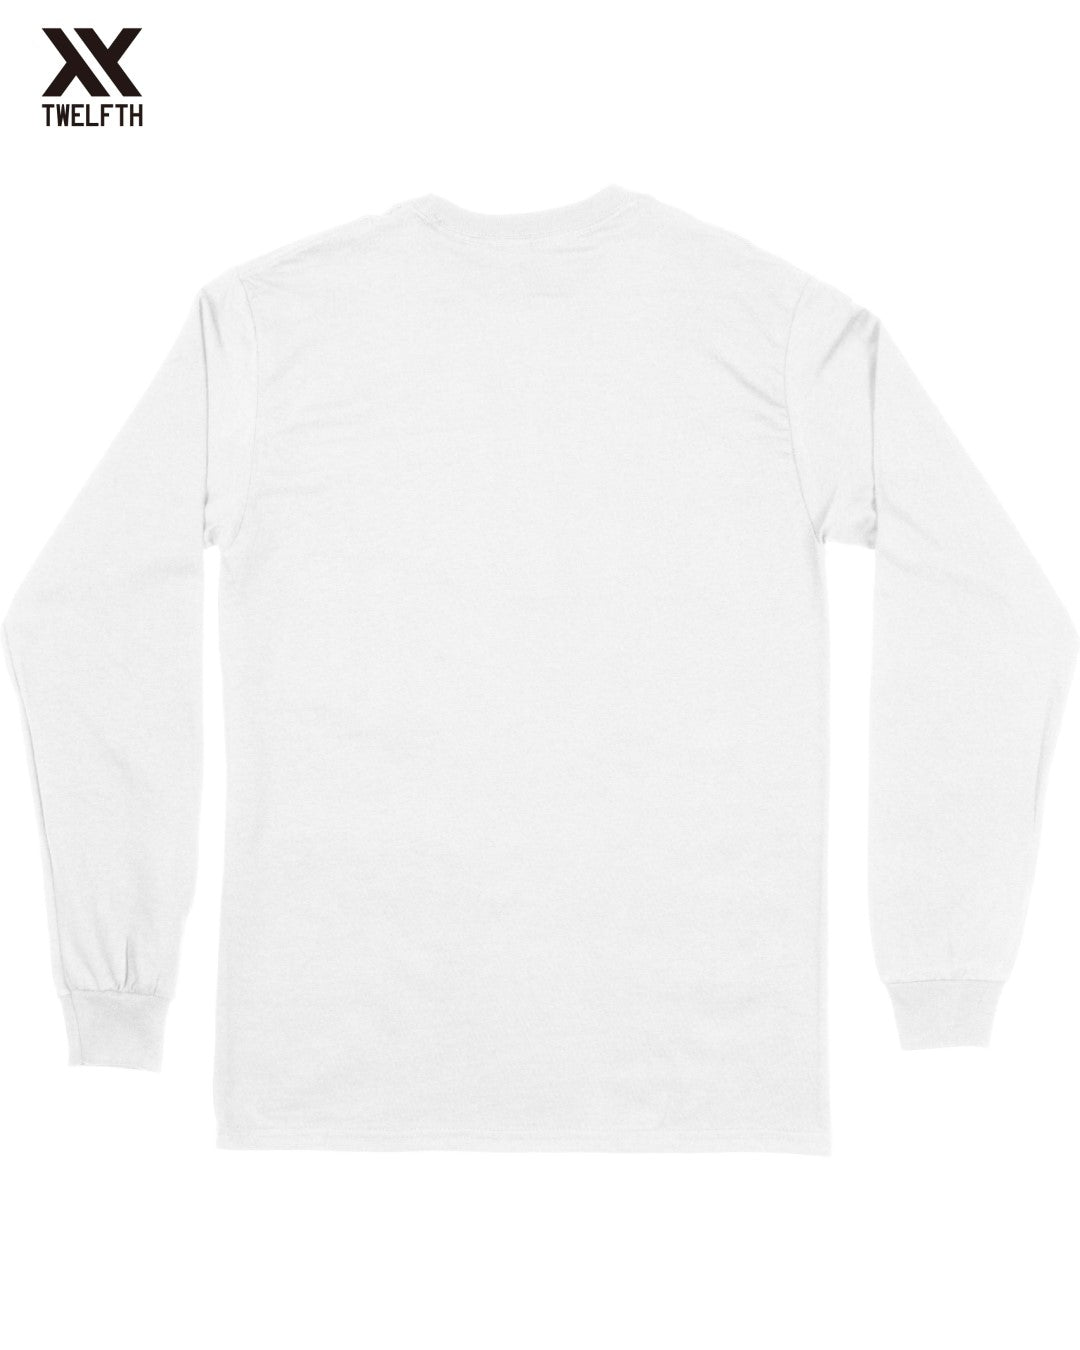 Saint Etienne Crest T-Shirt - Mens - Long Sleeve